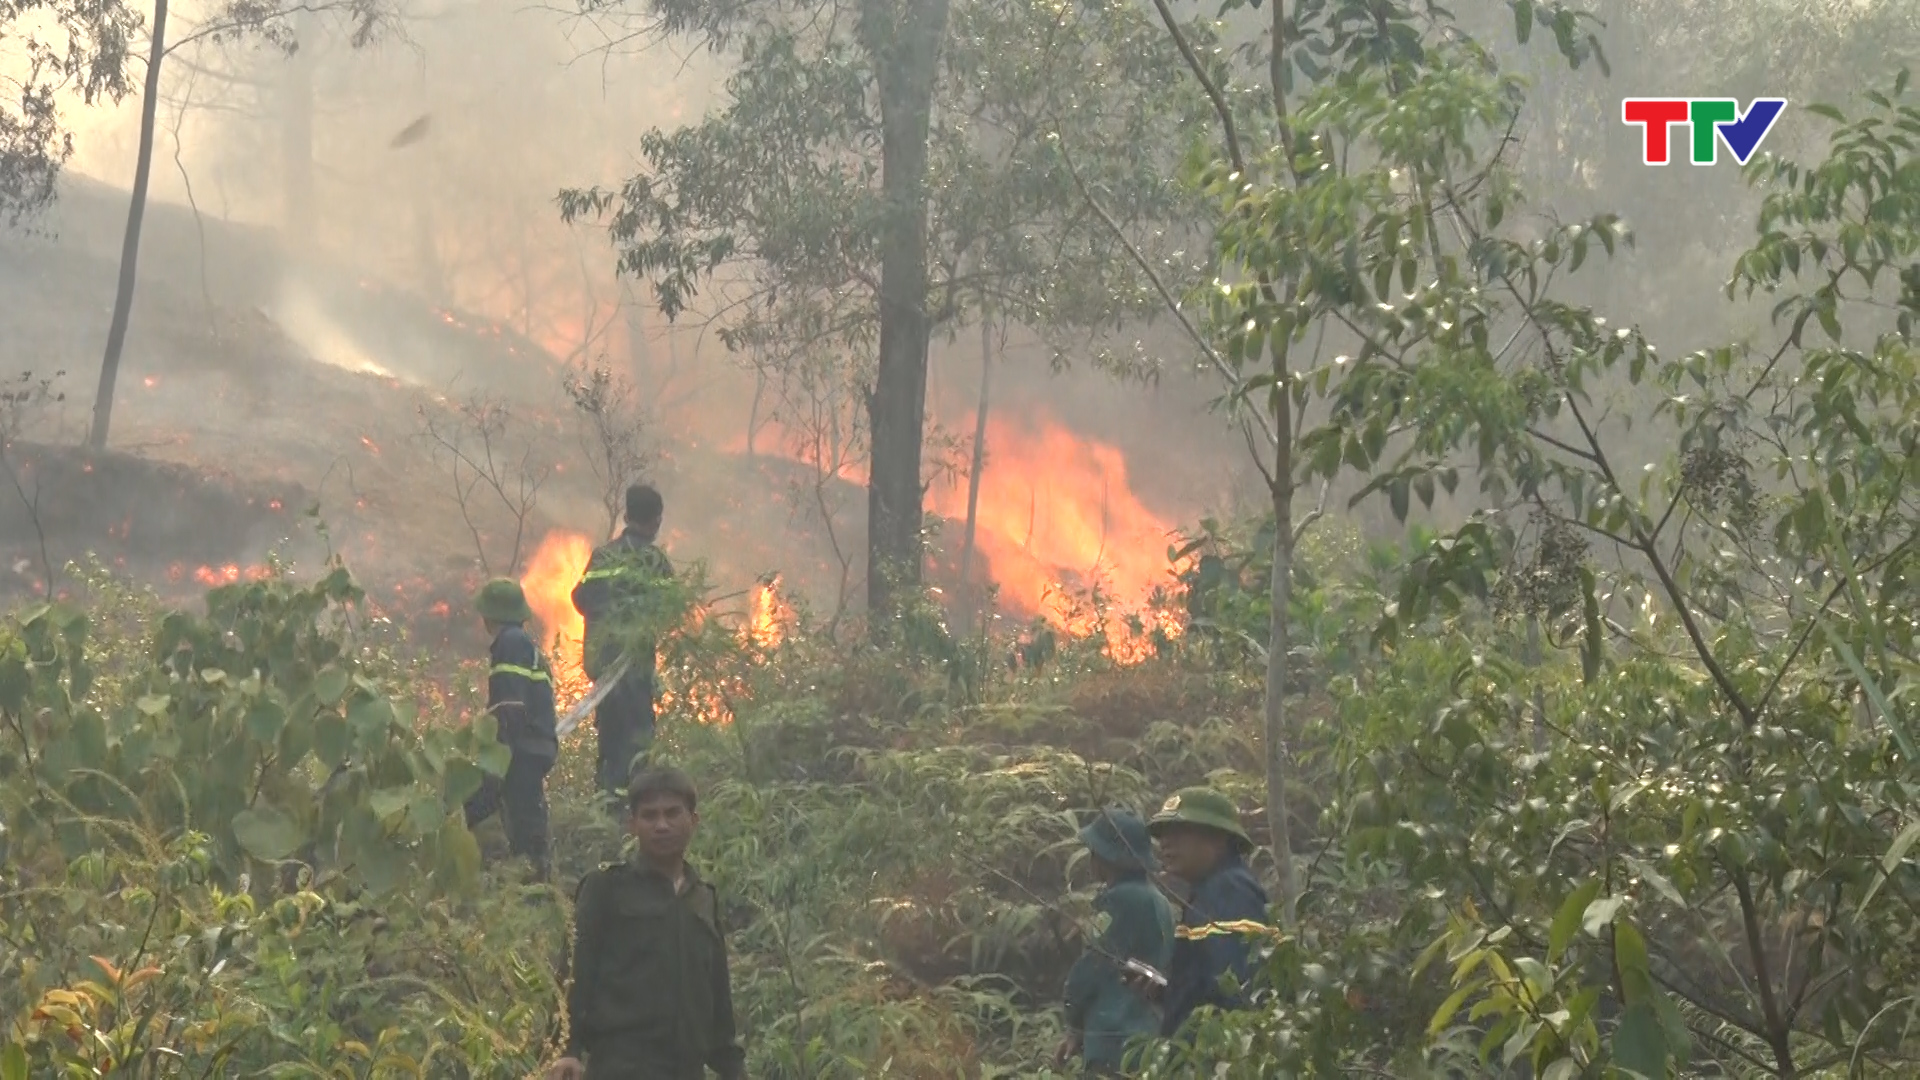 Huyện Hậu Lộc đã huy động toàn bộ lực lượng 4 tại chỗ kết hợp với , kiểm lâm, nhân dân địa phương- đơn vị phòng cháy chữa cháy số 3 Thị xã Bỉm sơn đã nỗ lực khắc phục đám cháy. 